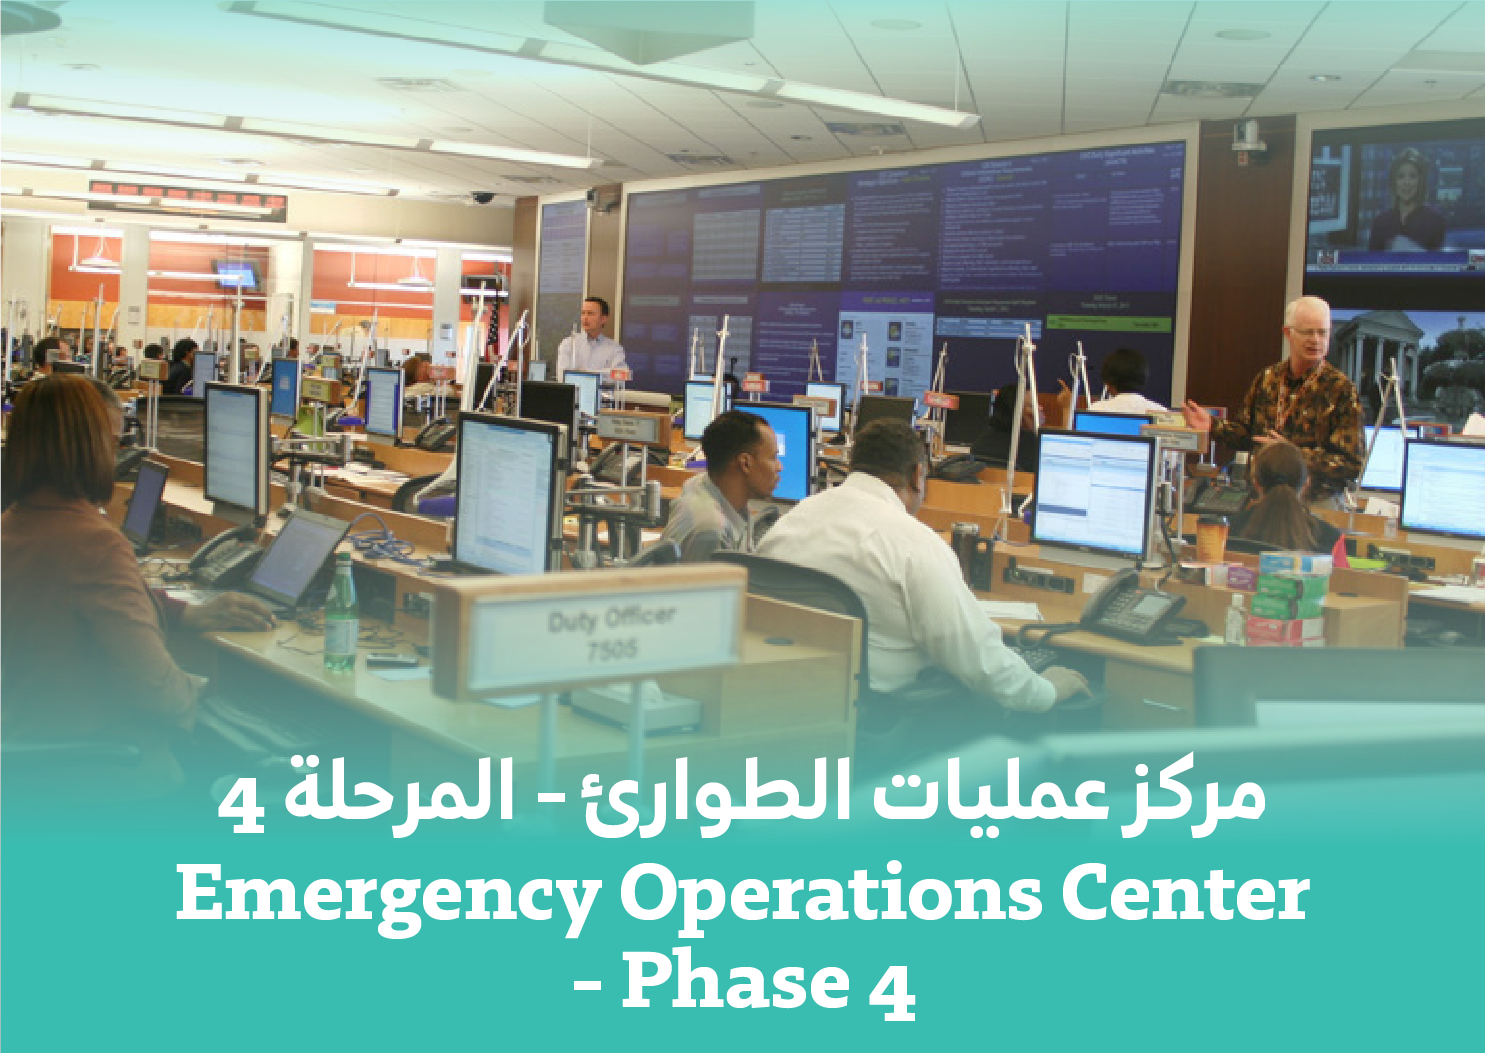 Emergency Operation Center - Phase 4